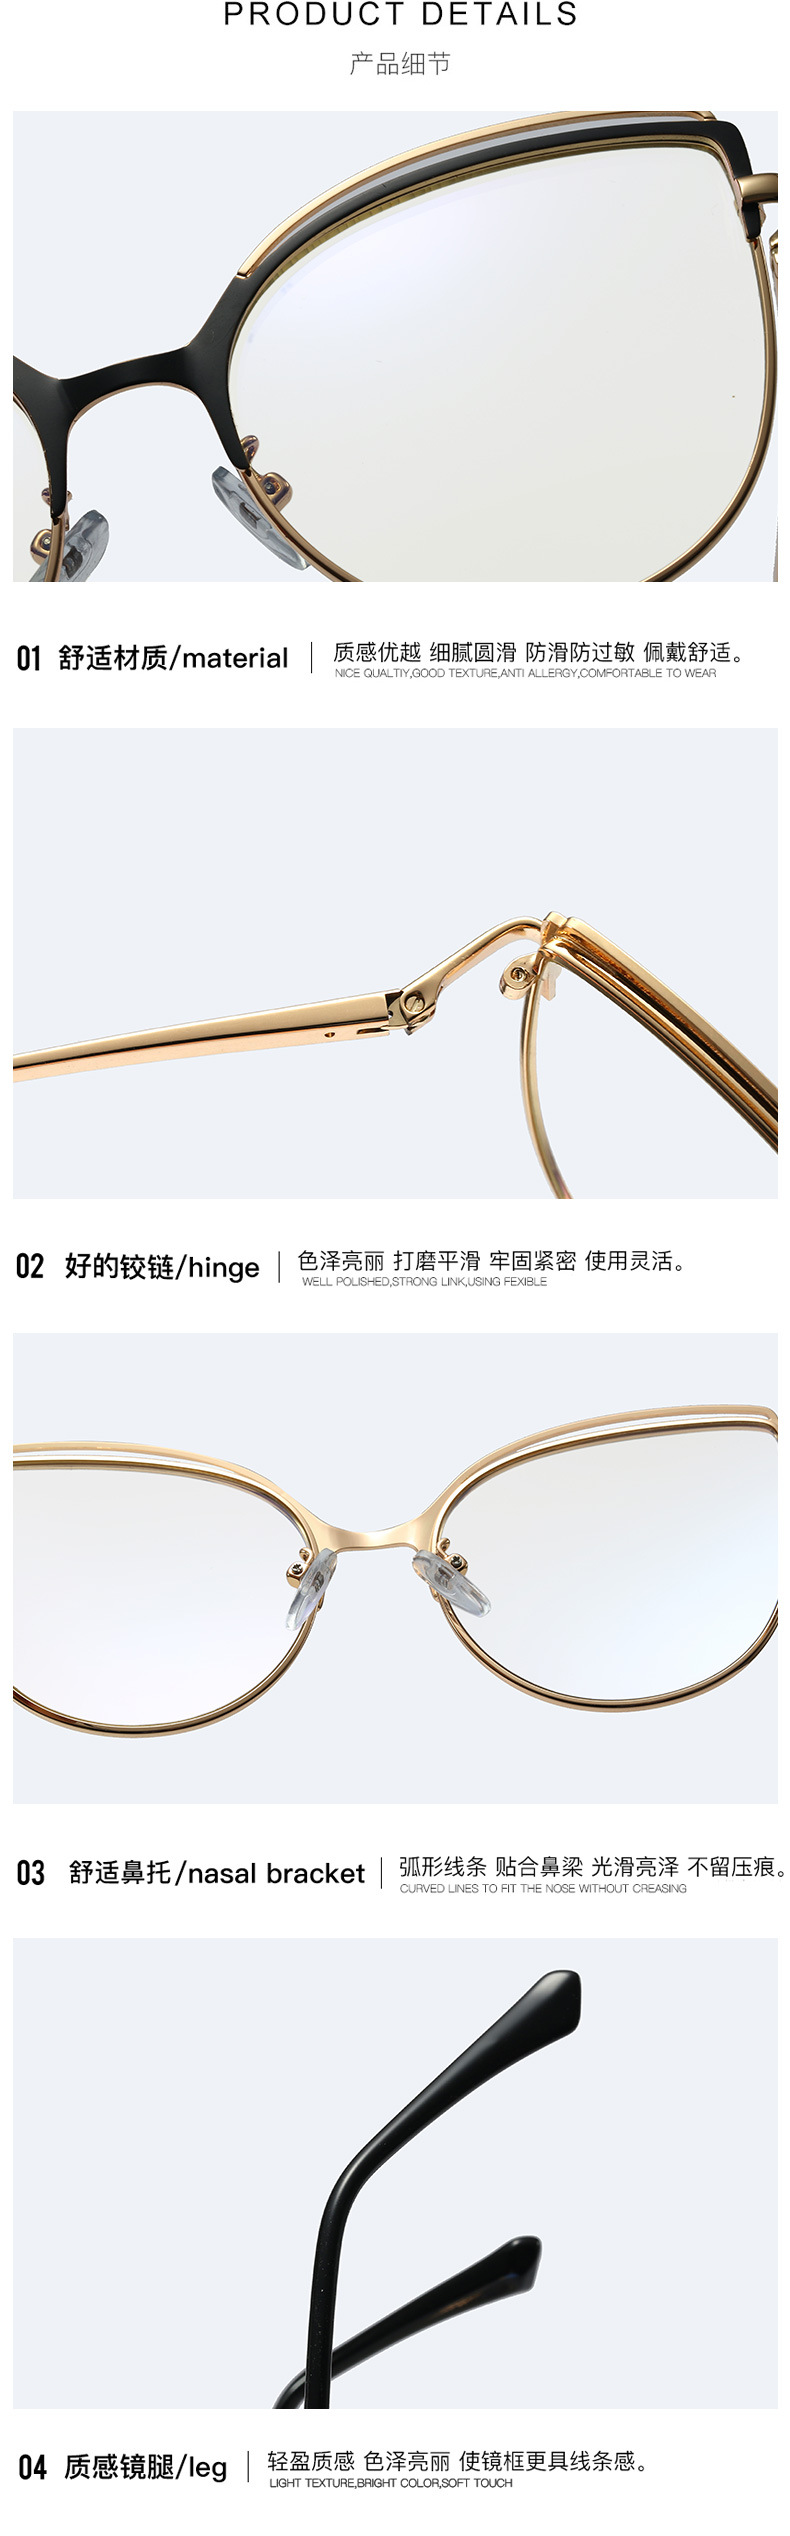 95765 Glasses